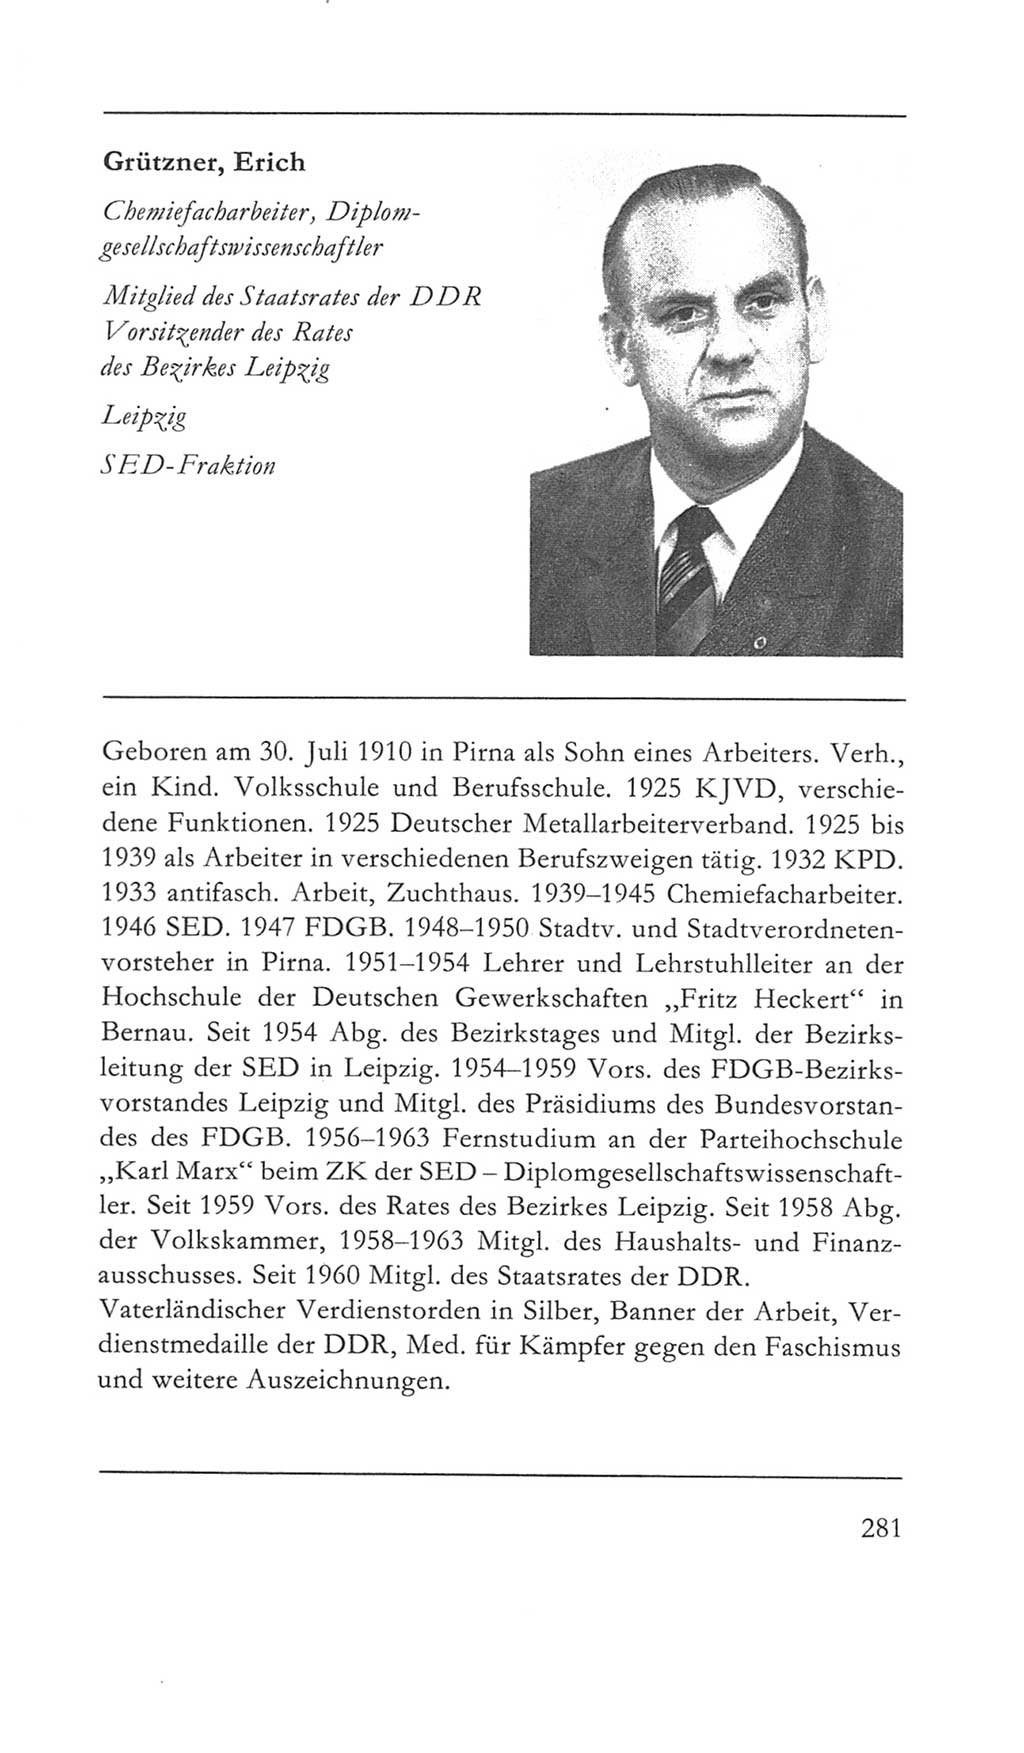 Volkskammer (VK) der Deutschen Demokratischen Republik (DDR) 5. Wahlperiode 1967-1971, Seite 281 (VK. DDR 5. WP. 1967-1971, S. 281)